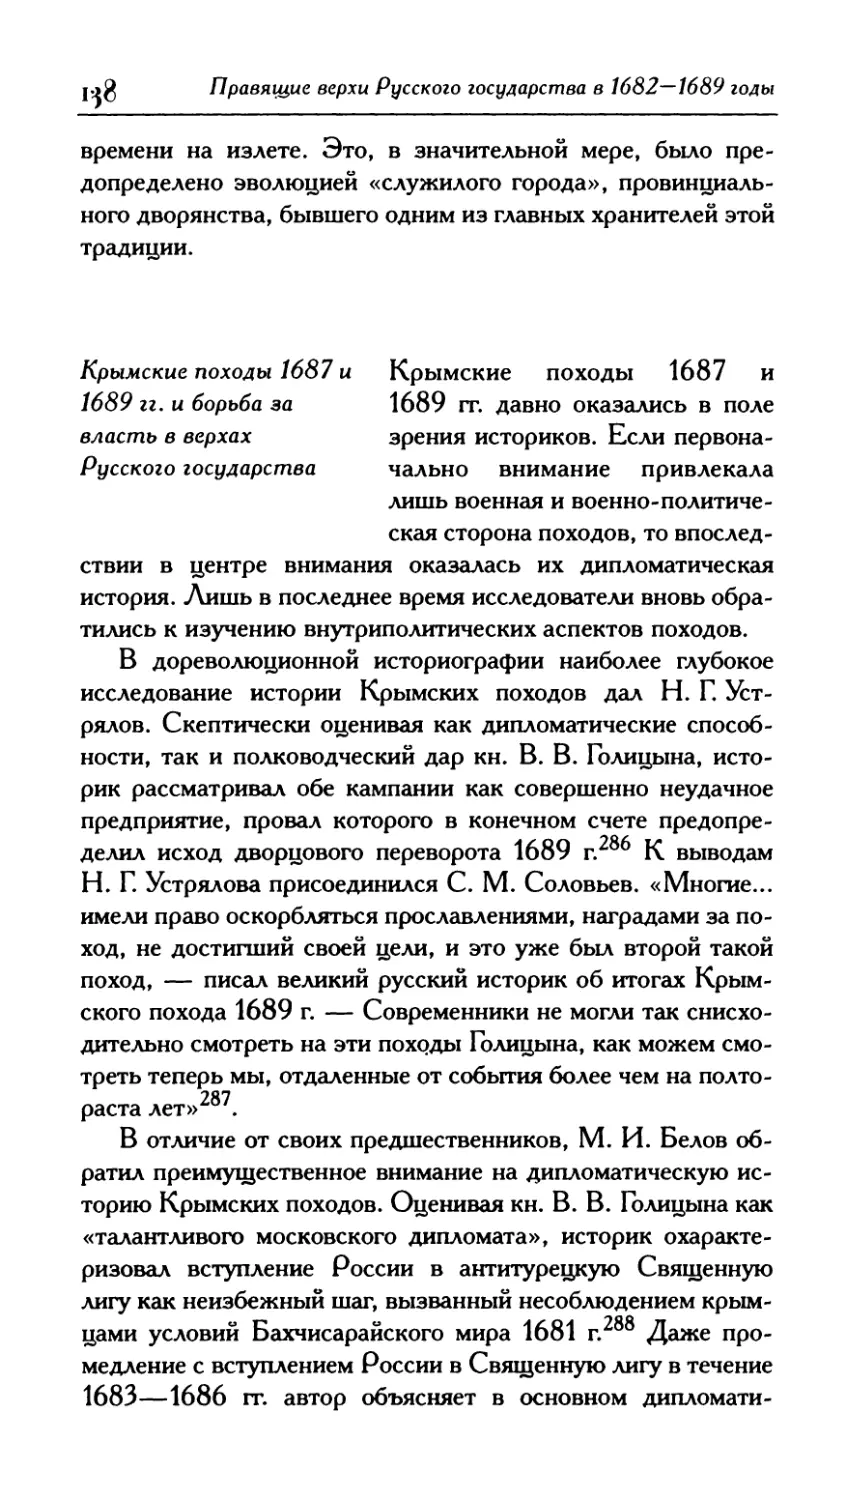 4. Крымские походы 1687 и 1689 гг. и борьба за власть в верхах Русского государства